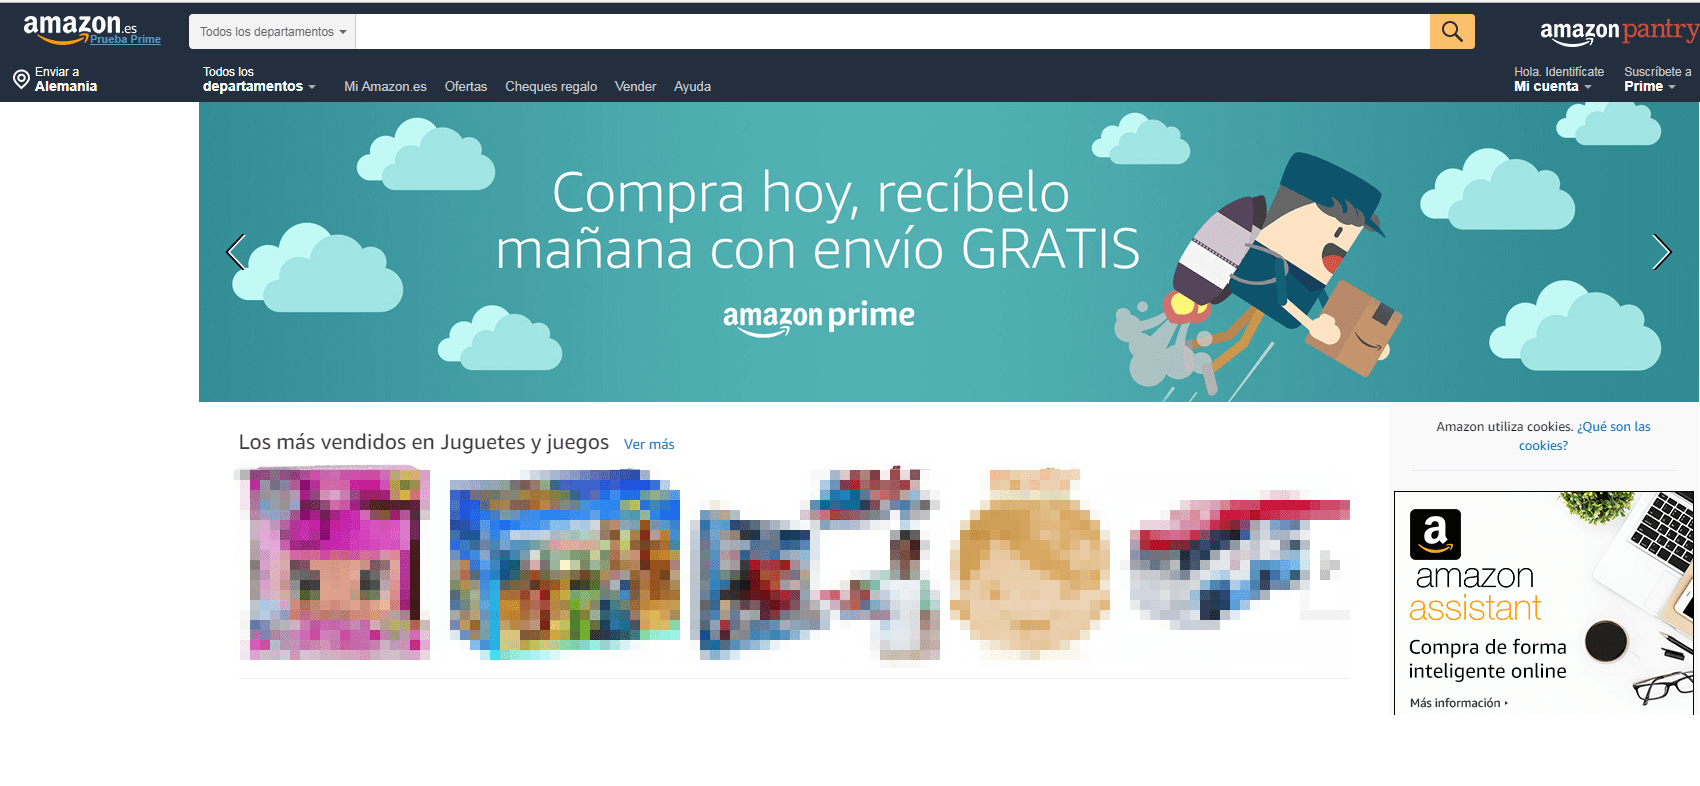 Página de inicio de Amazon.es